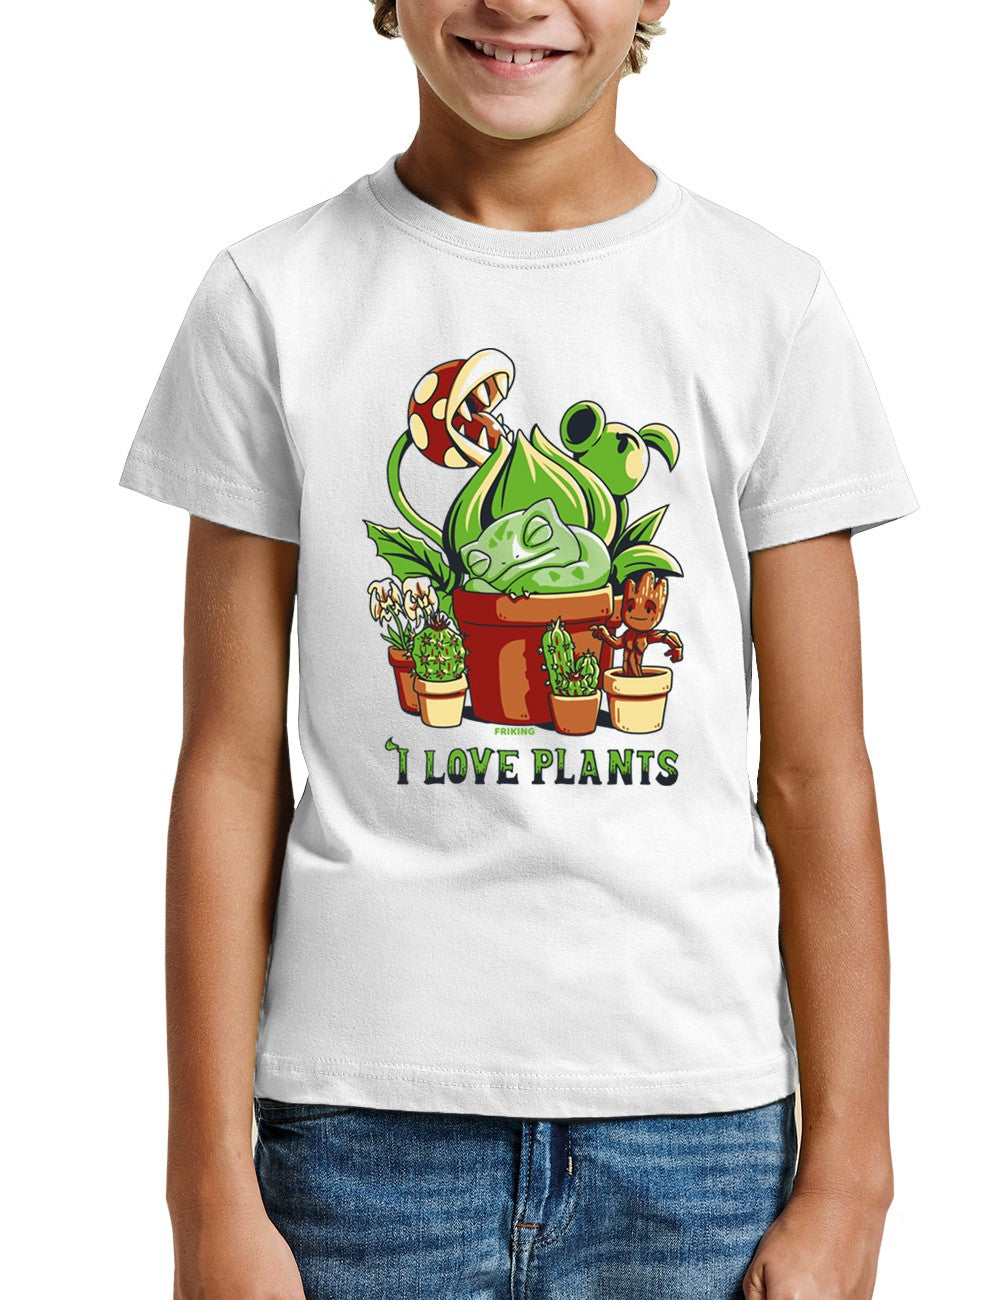 I love plants